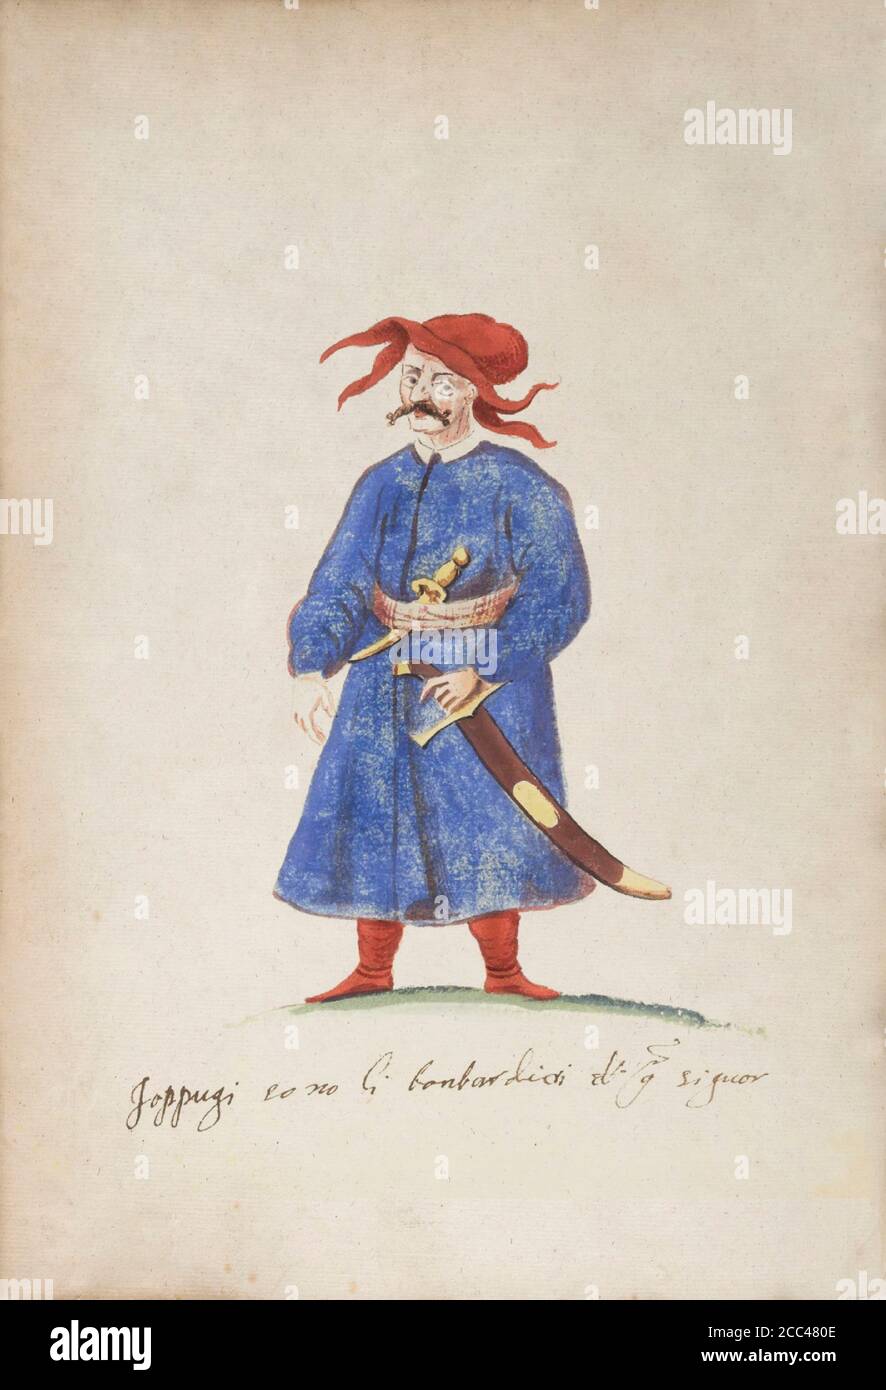 Die Geschichte des Osmanischen Reiches. Türkische Artilleryman - loppugi. 16. Jahrhundert Stockfoto